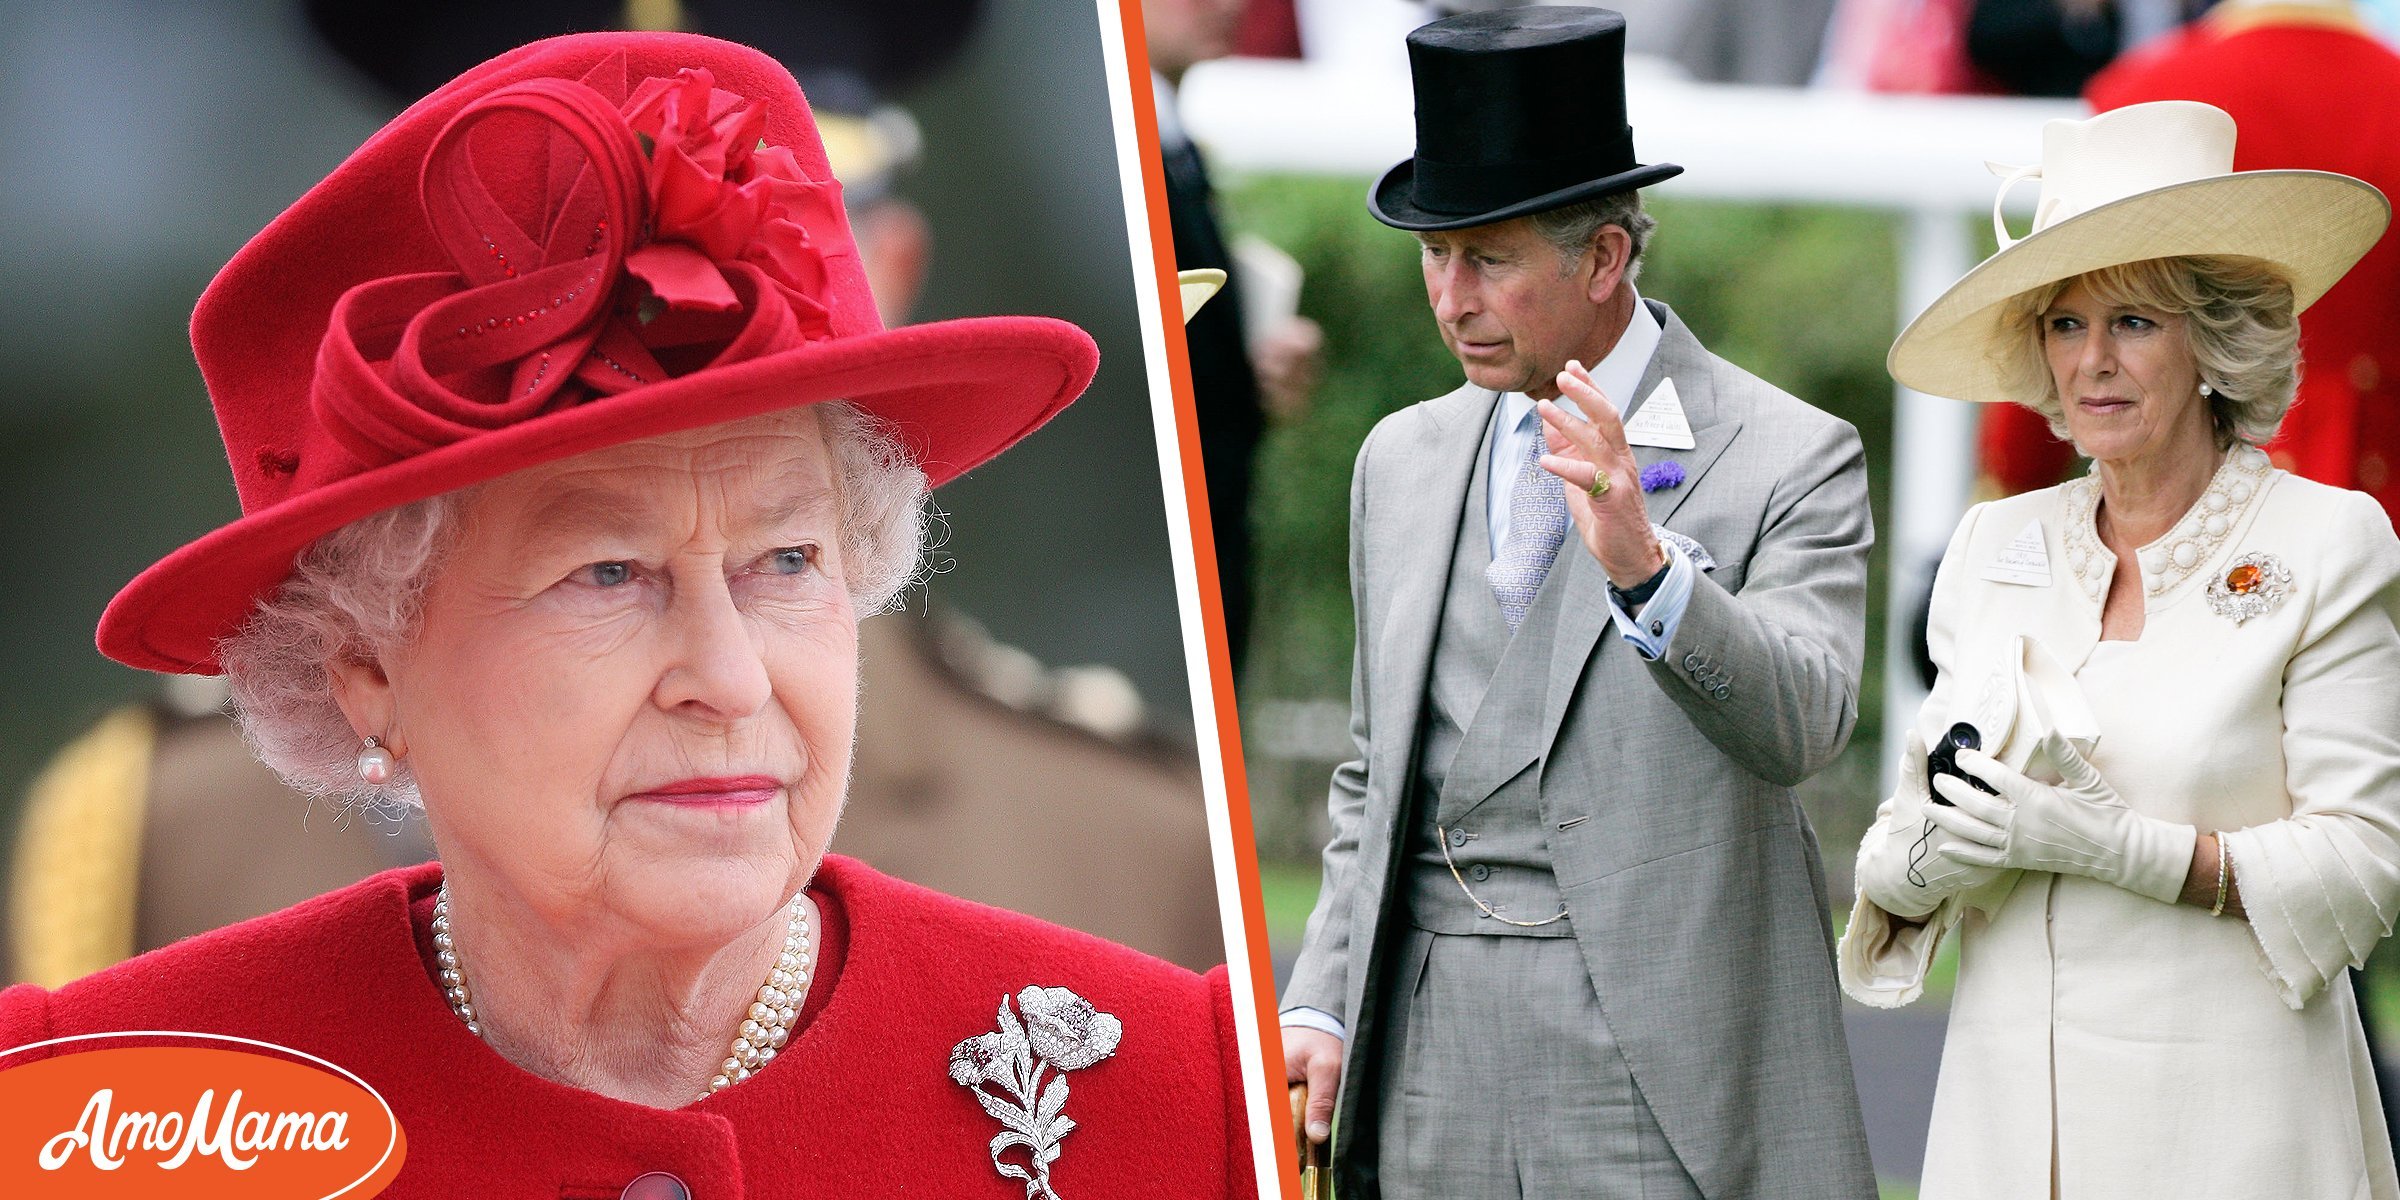 Königin hat Camilla vor Charles' erster Hochzeit "abgesägt" - sie wurde